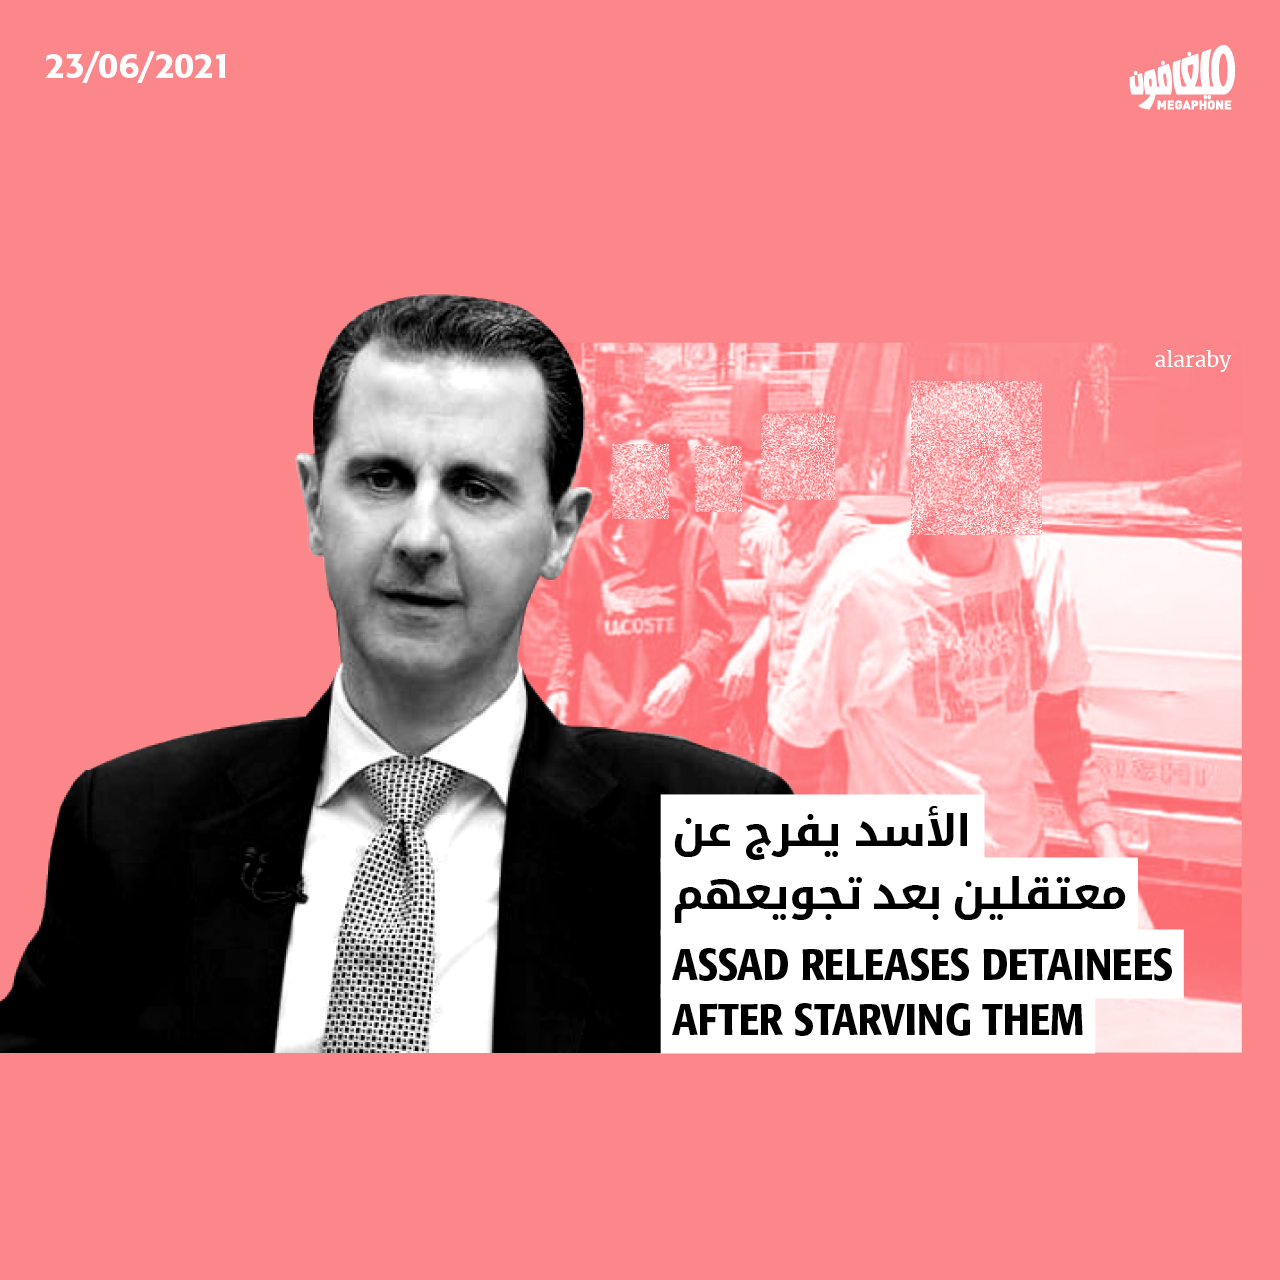 الأسد يفرج عن معتقلين بعد تجويعهم